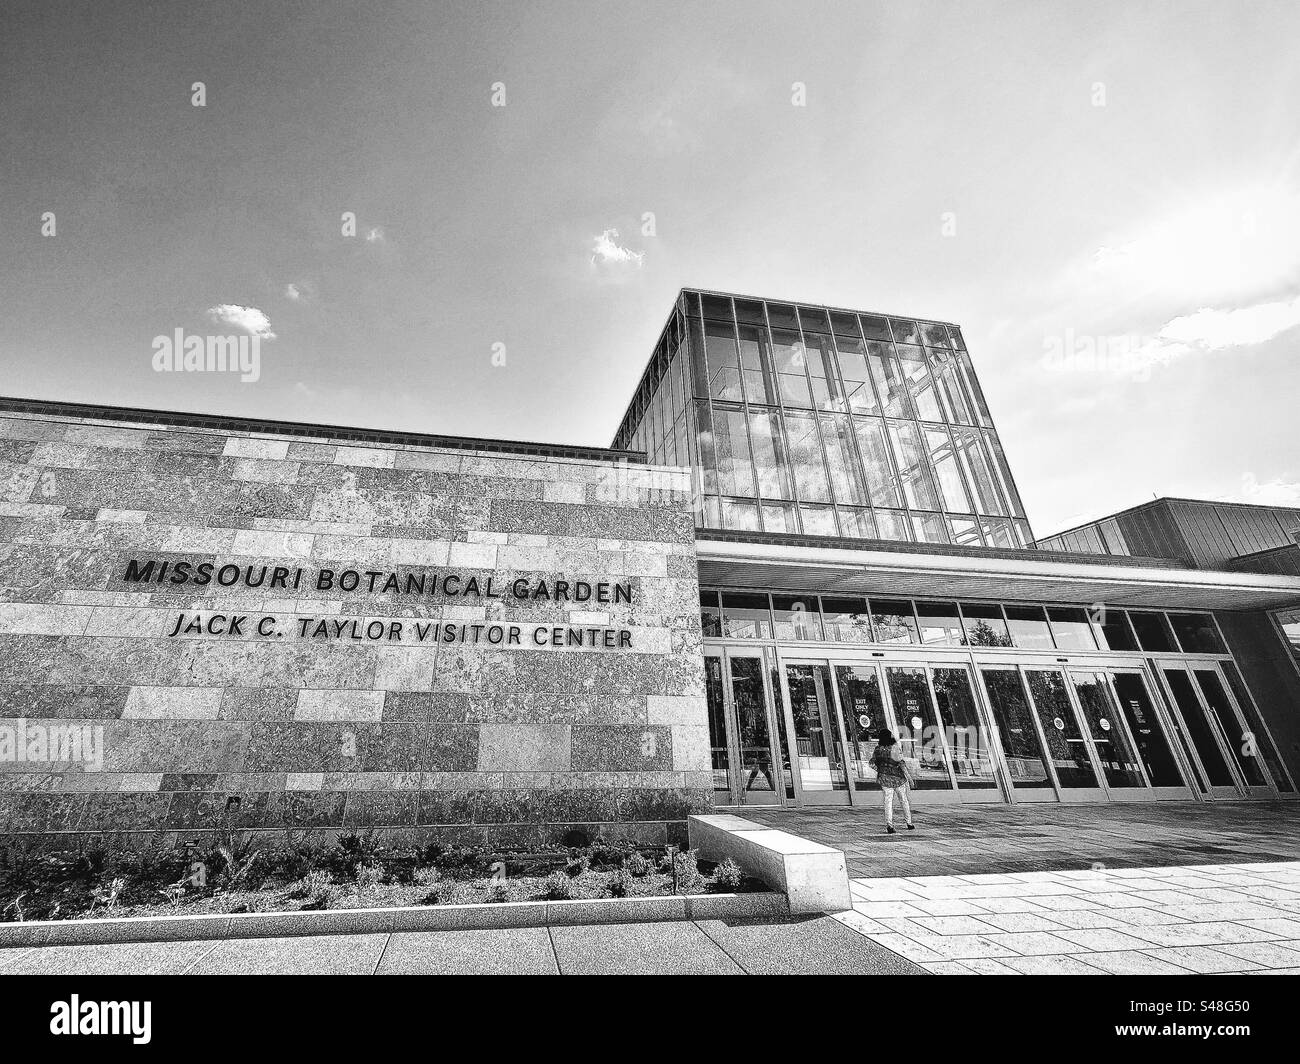 Centro visitatori Jack C. Taylor presso il Missouri Botanical Garden. Cartello all'ingresso. Architettura moderna. Filtro bianco e nero. Foto Stock